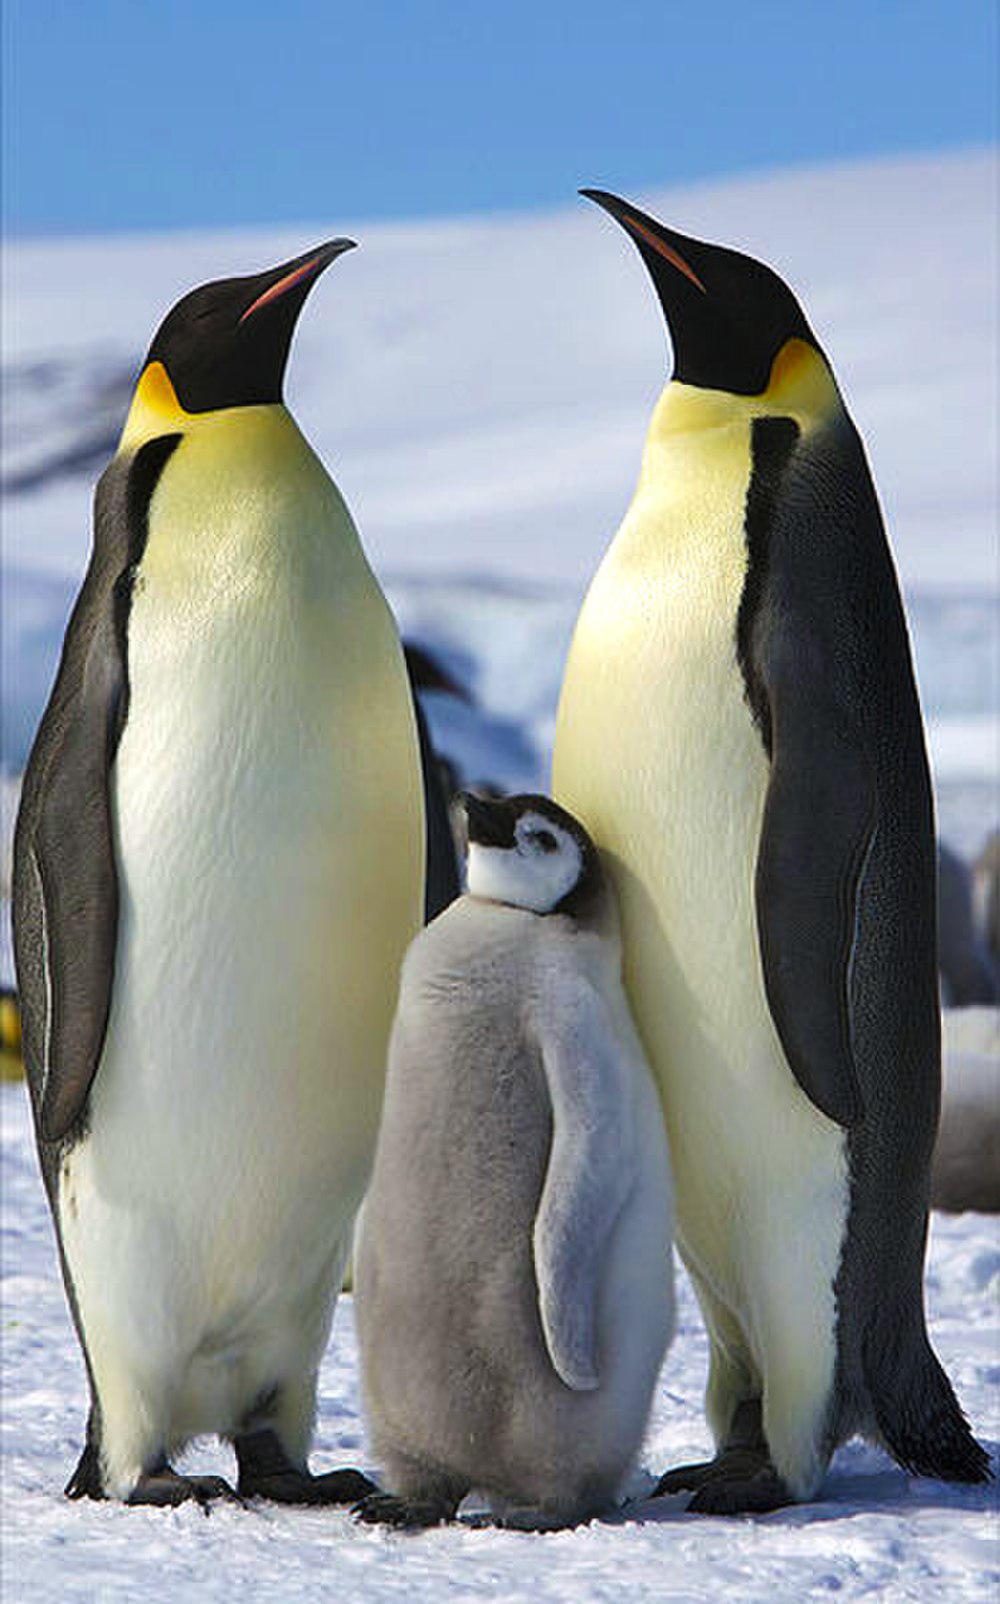 帝企鹅 / Emperor Penguin / Aptenodytes forsteri